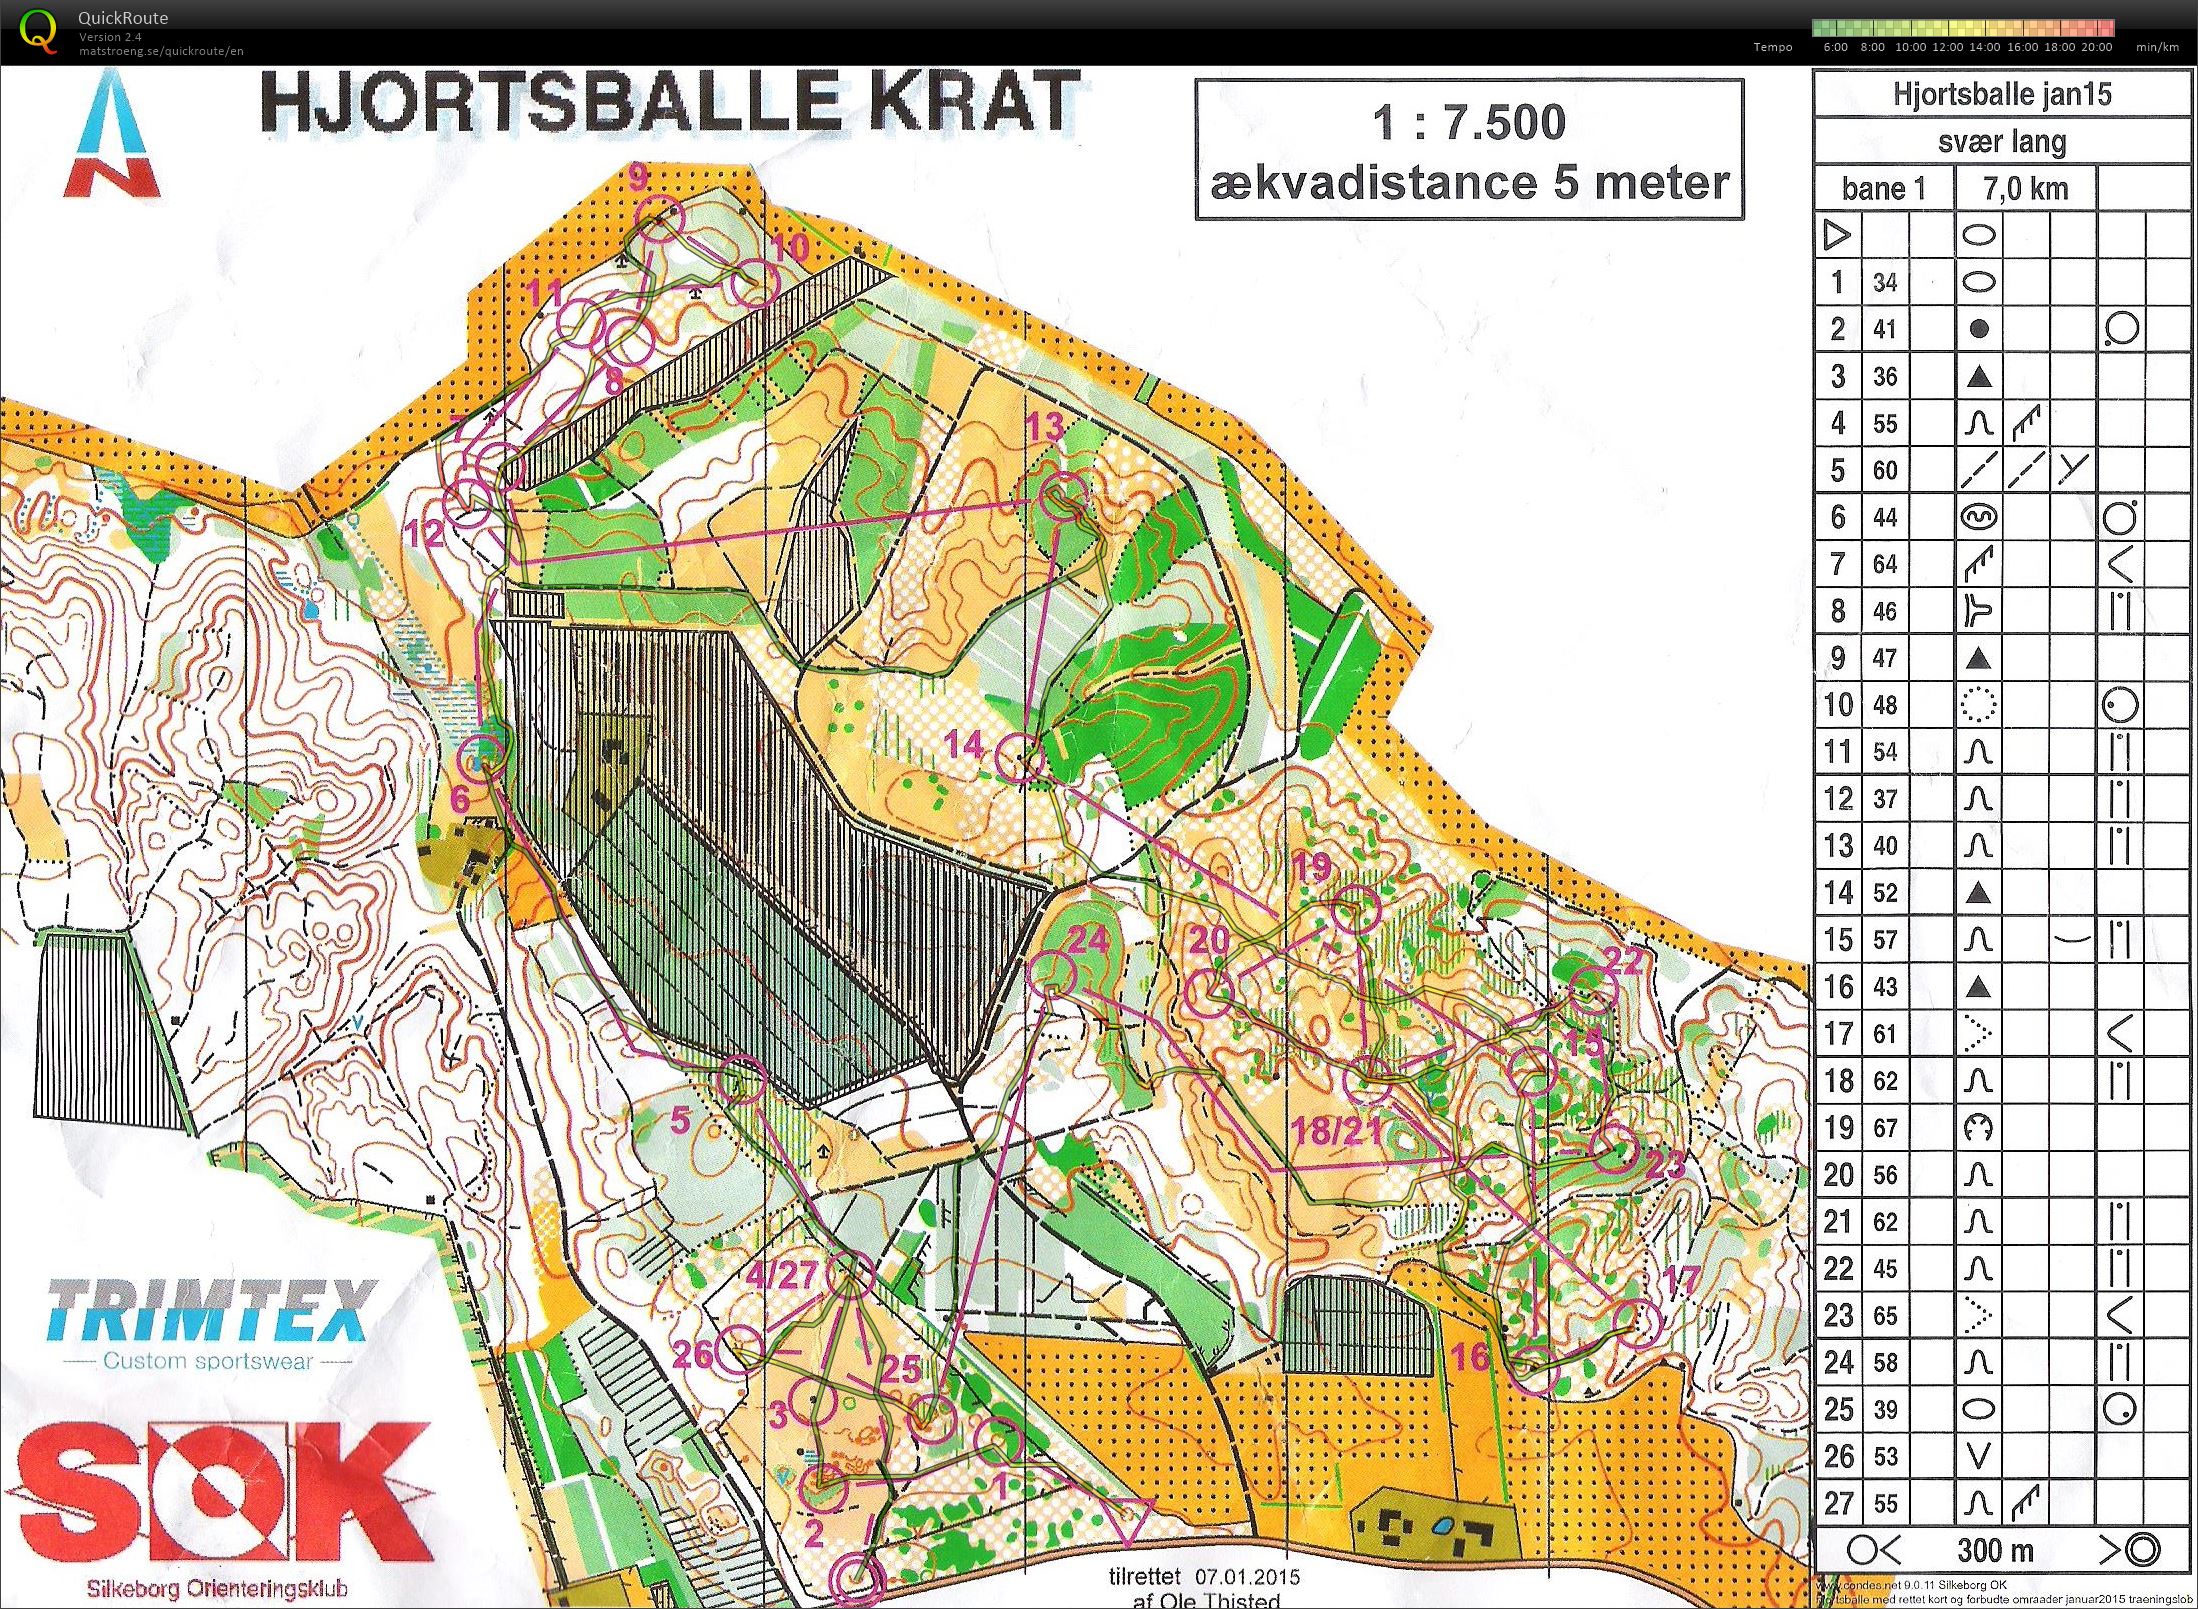 Hjortsballe Krat - Bane 1 - 7 km. (2015-01-31)